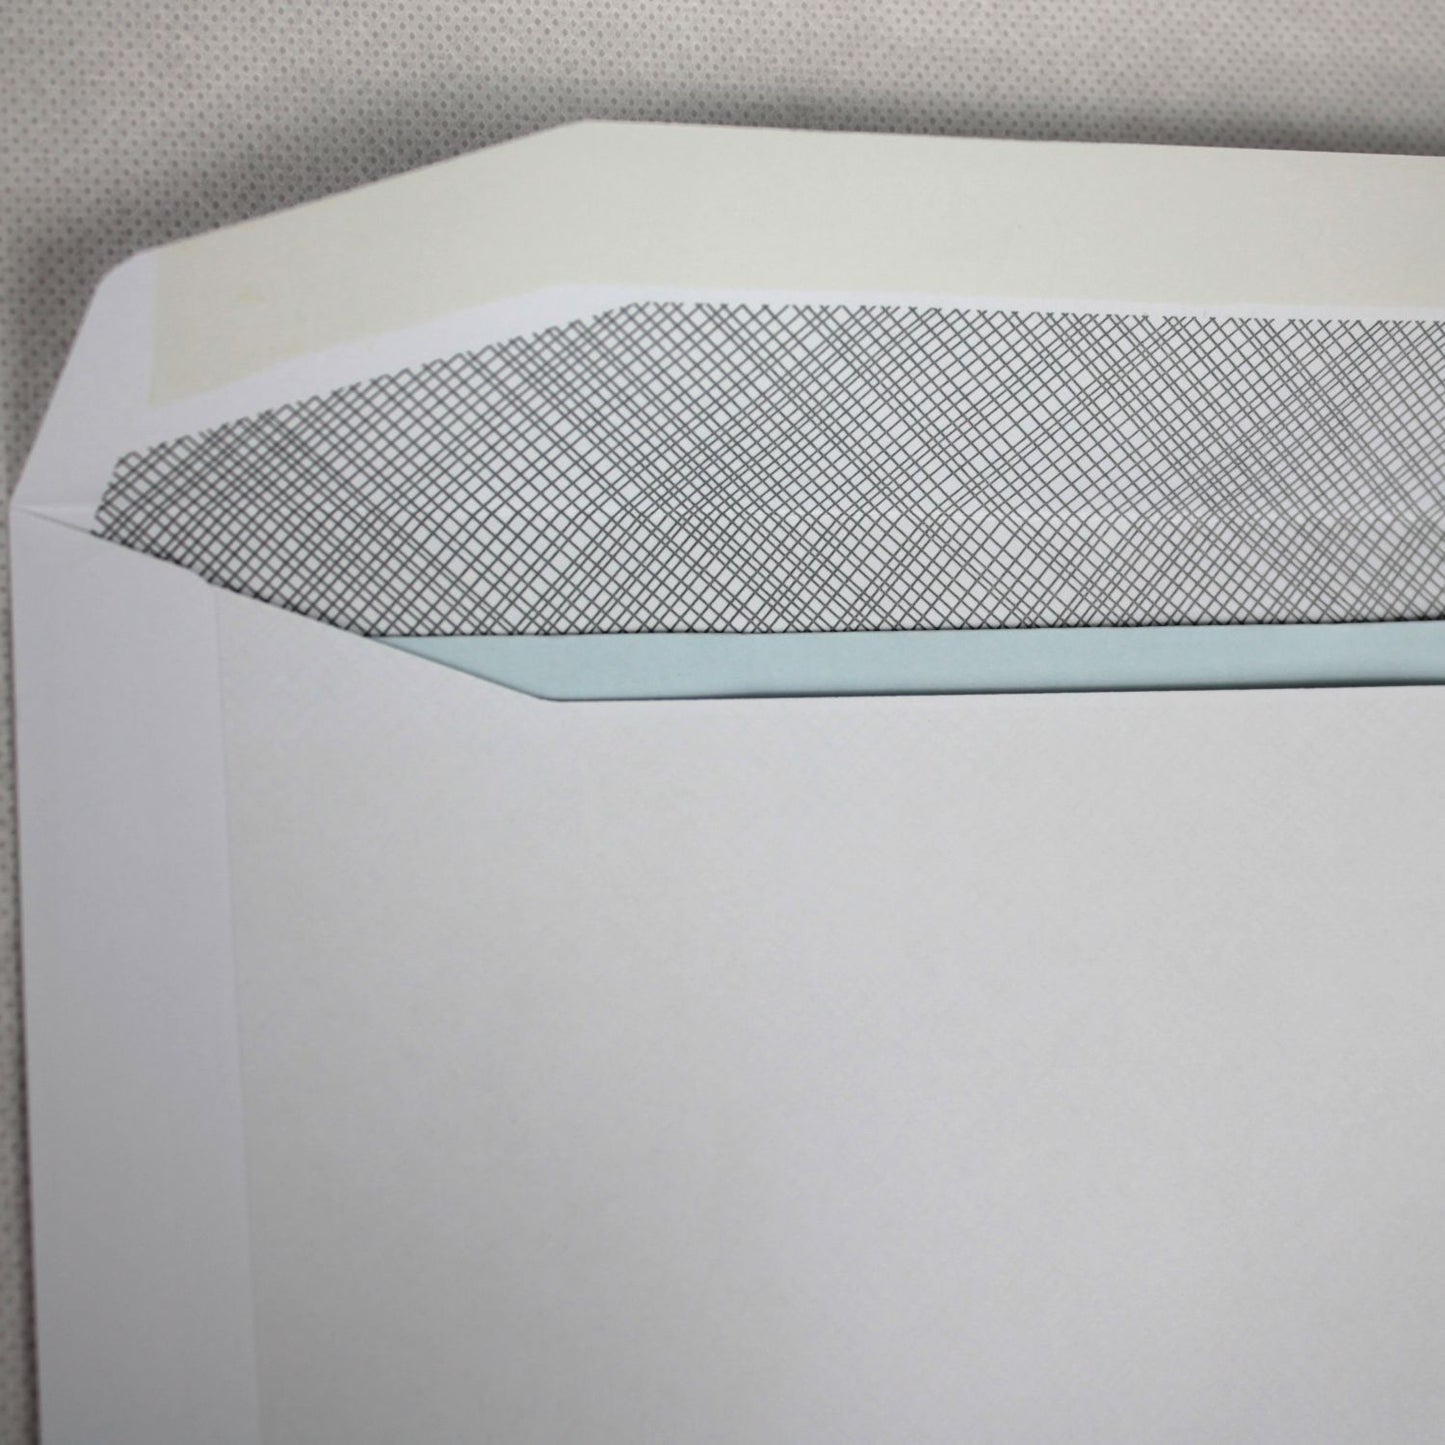 114x229mm DL+ White Gummed Envelopes (Window 50x90mm)